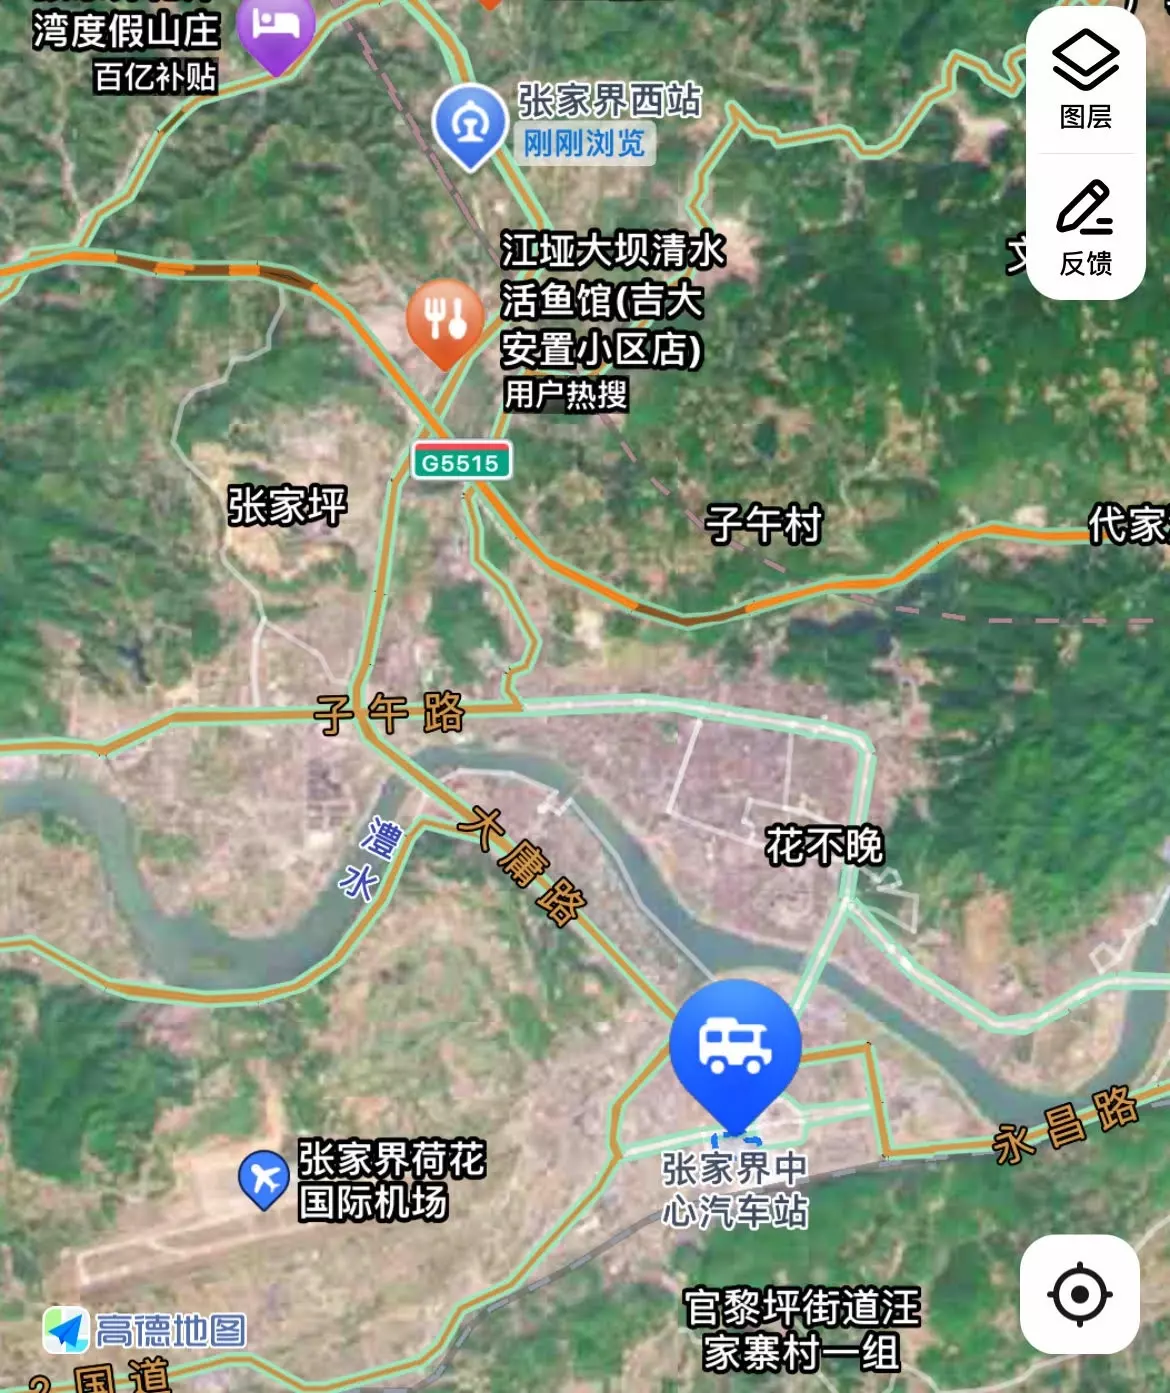 Карта Чжанцзяцзе. Синим отмечены аэропорт, железнодорожный вокзал и автовокзал